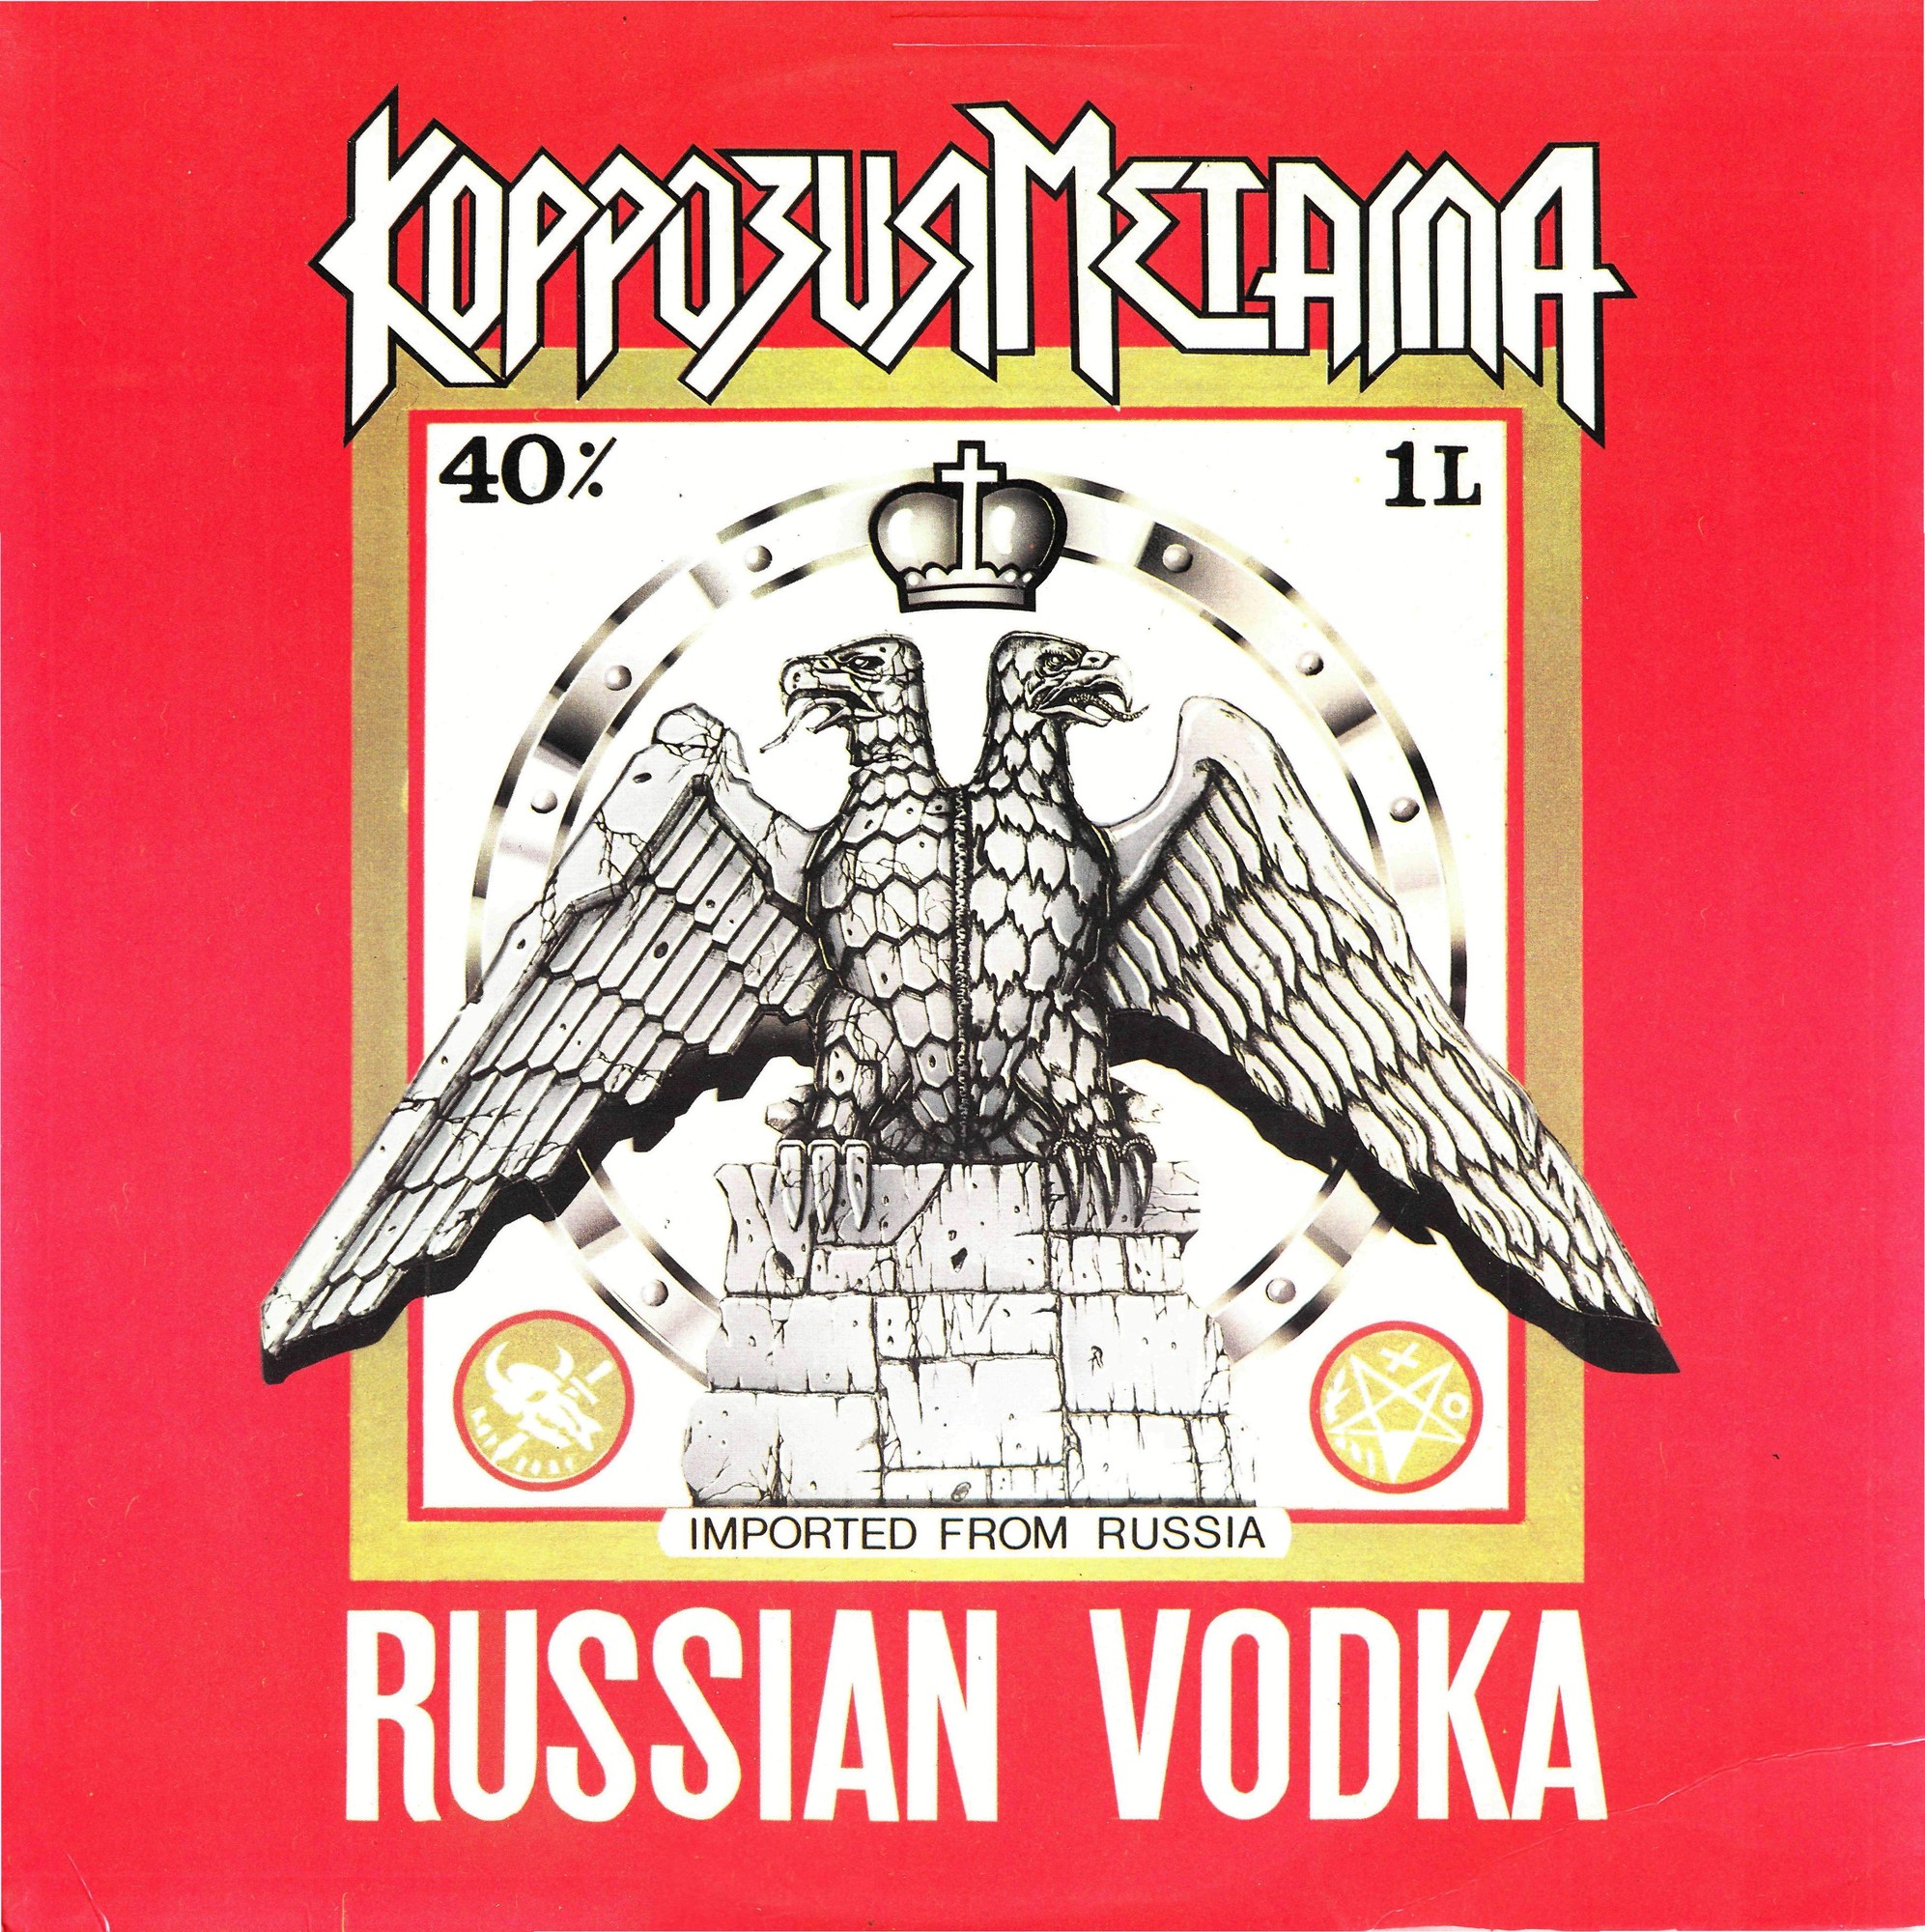 ГРУППА «КОРРОЗИЯ МЕТАЛЛА» "Russian Vodka"